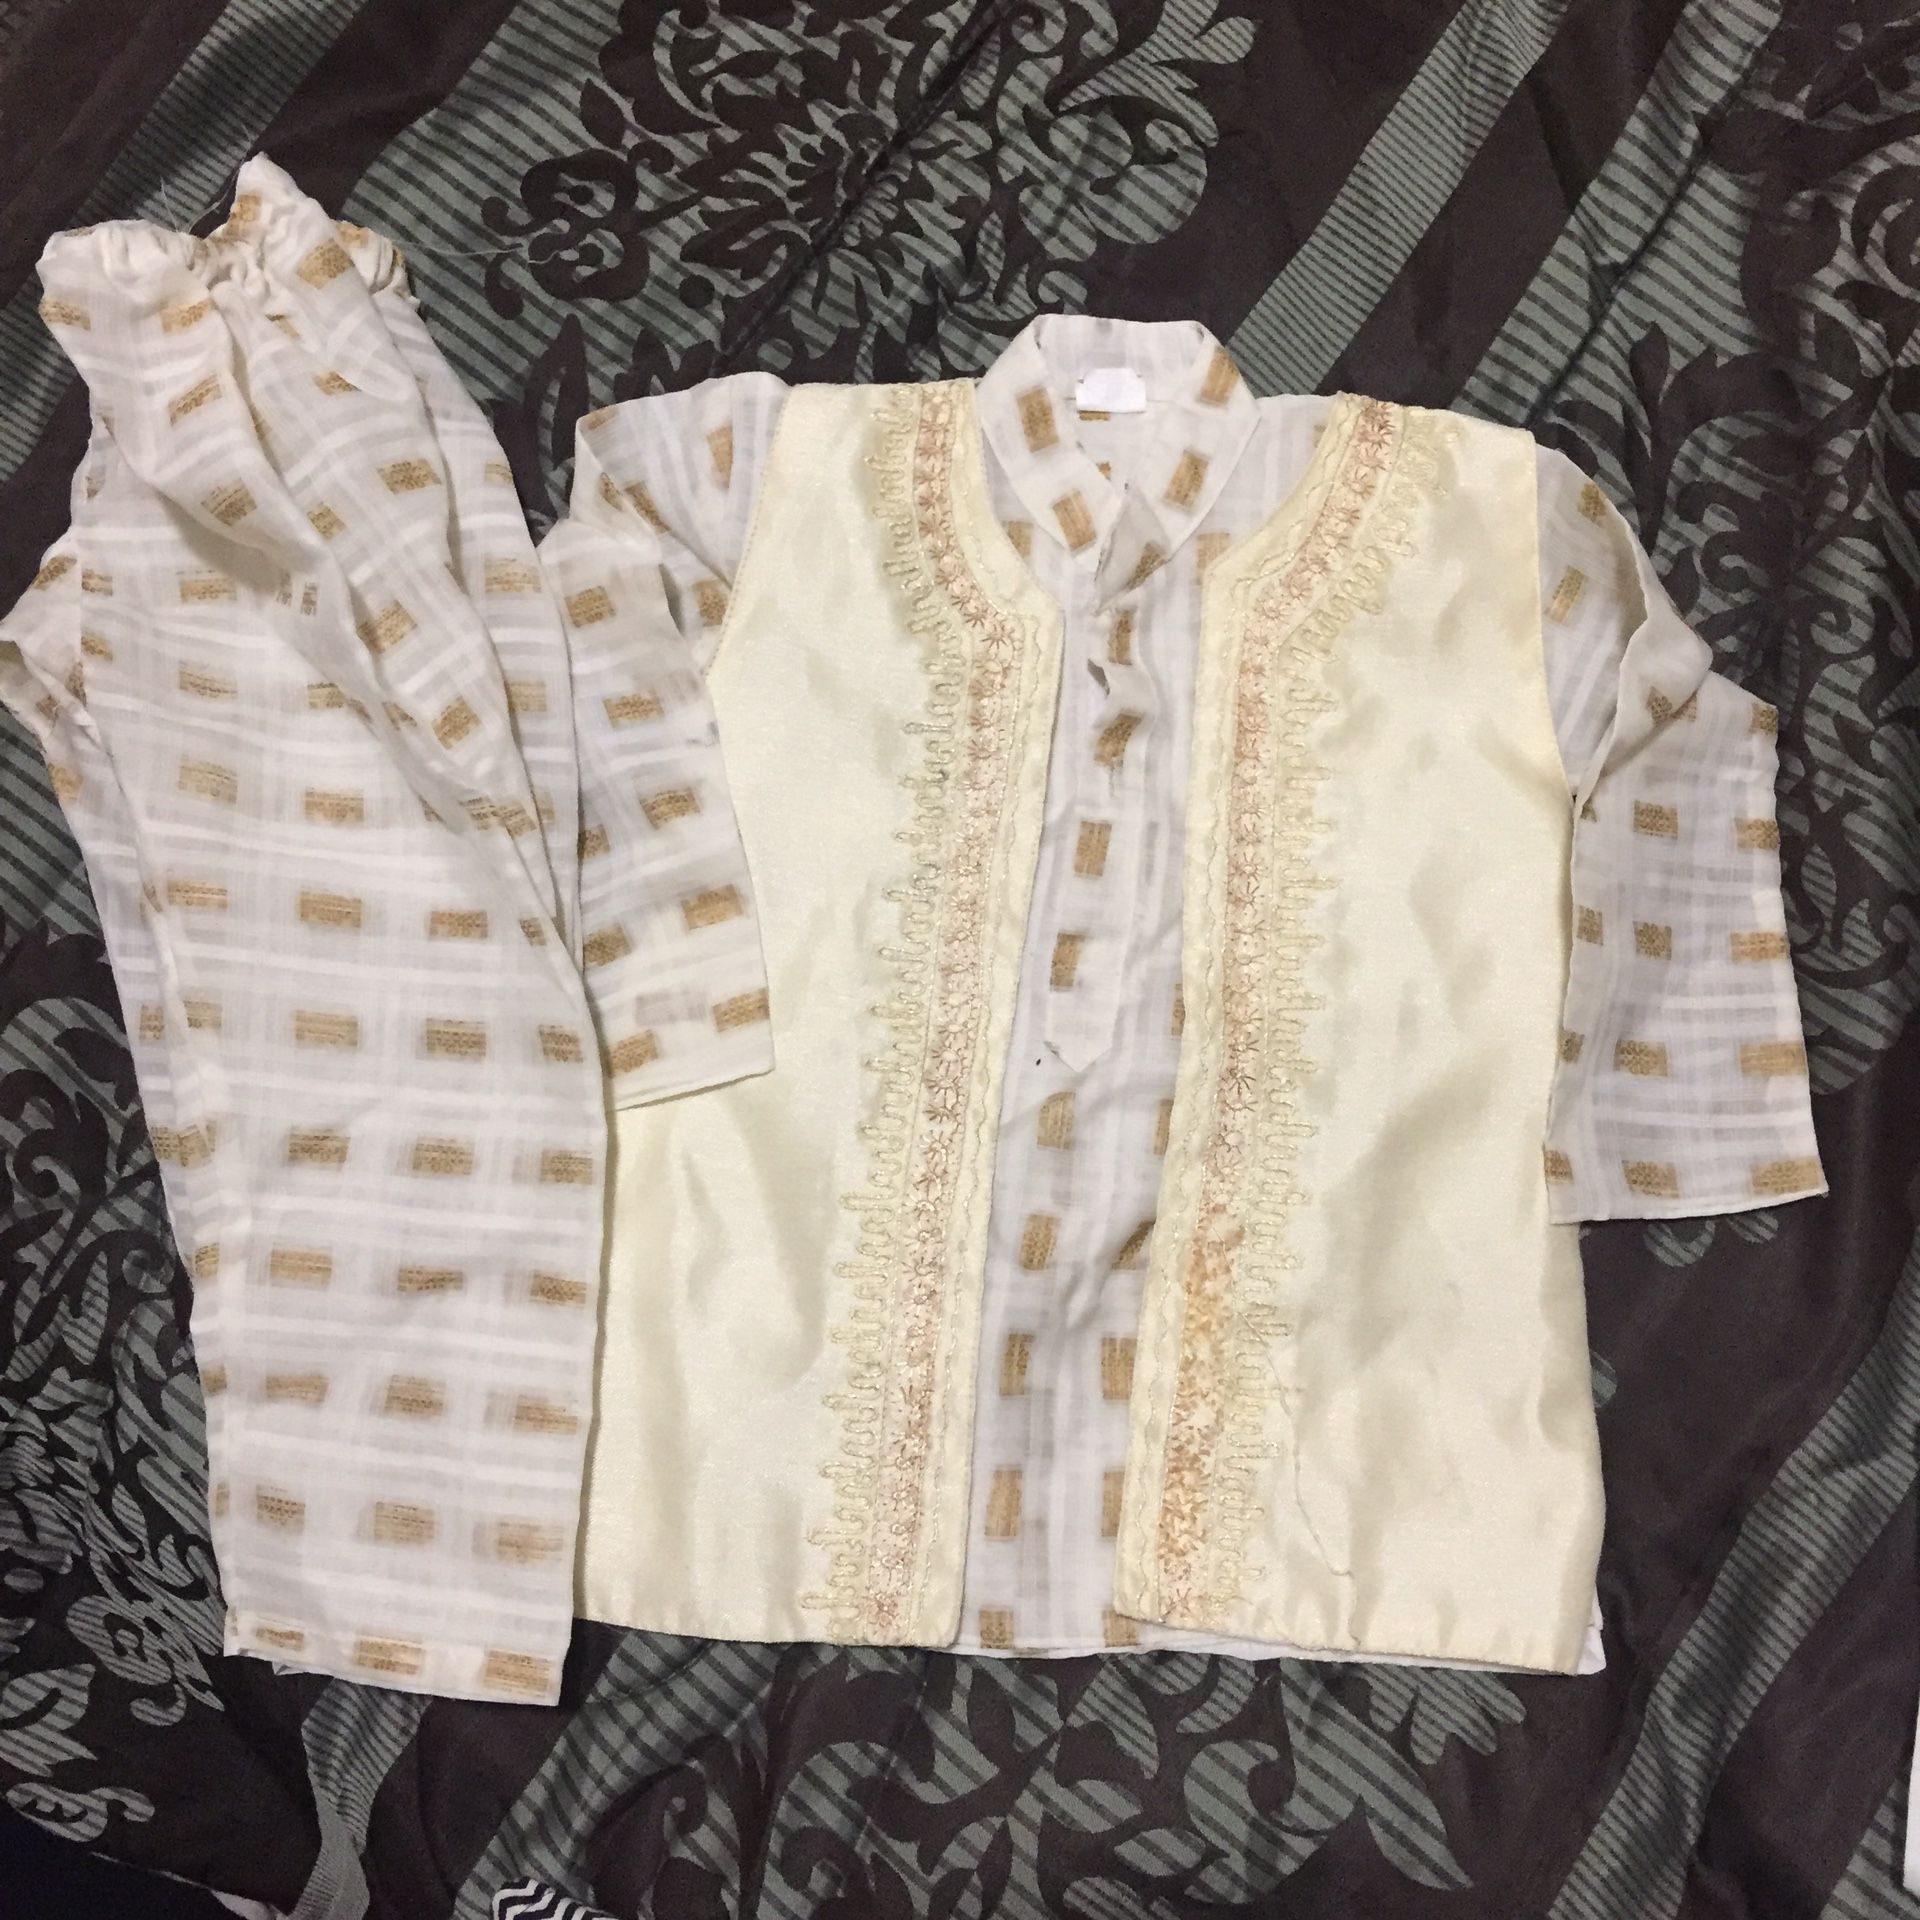 Kids boys toddler Shalwar Kameez Dress 15-22m shirt length 17”